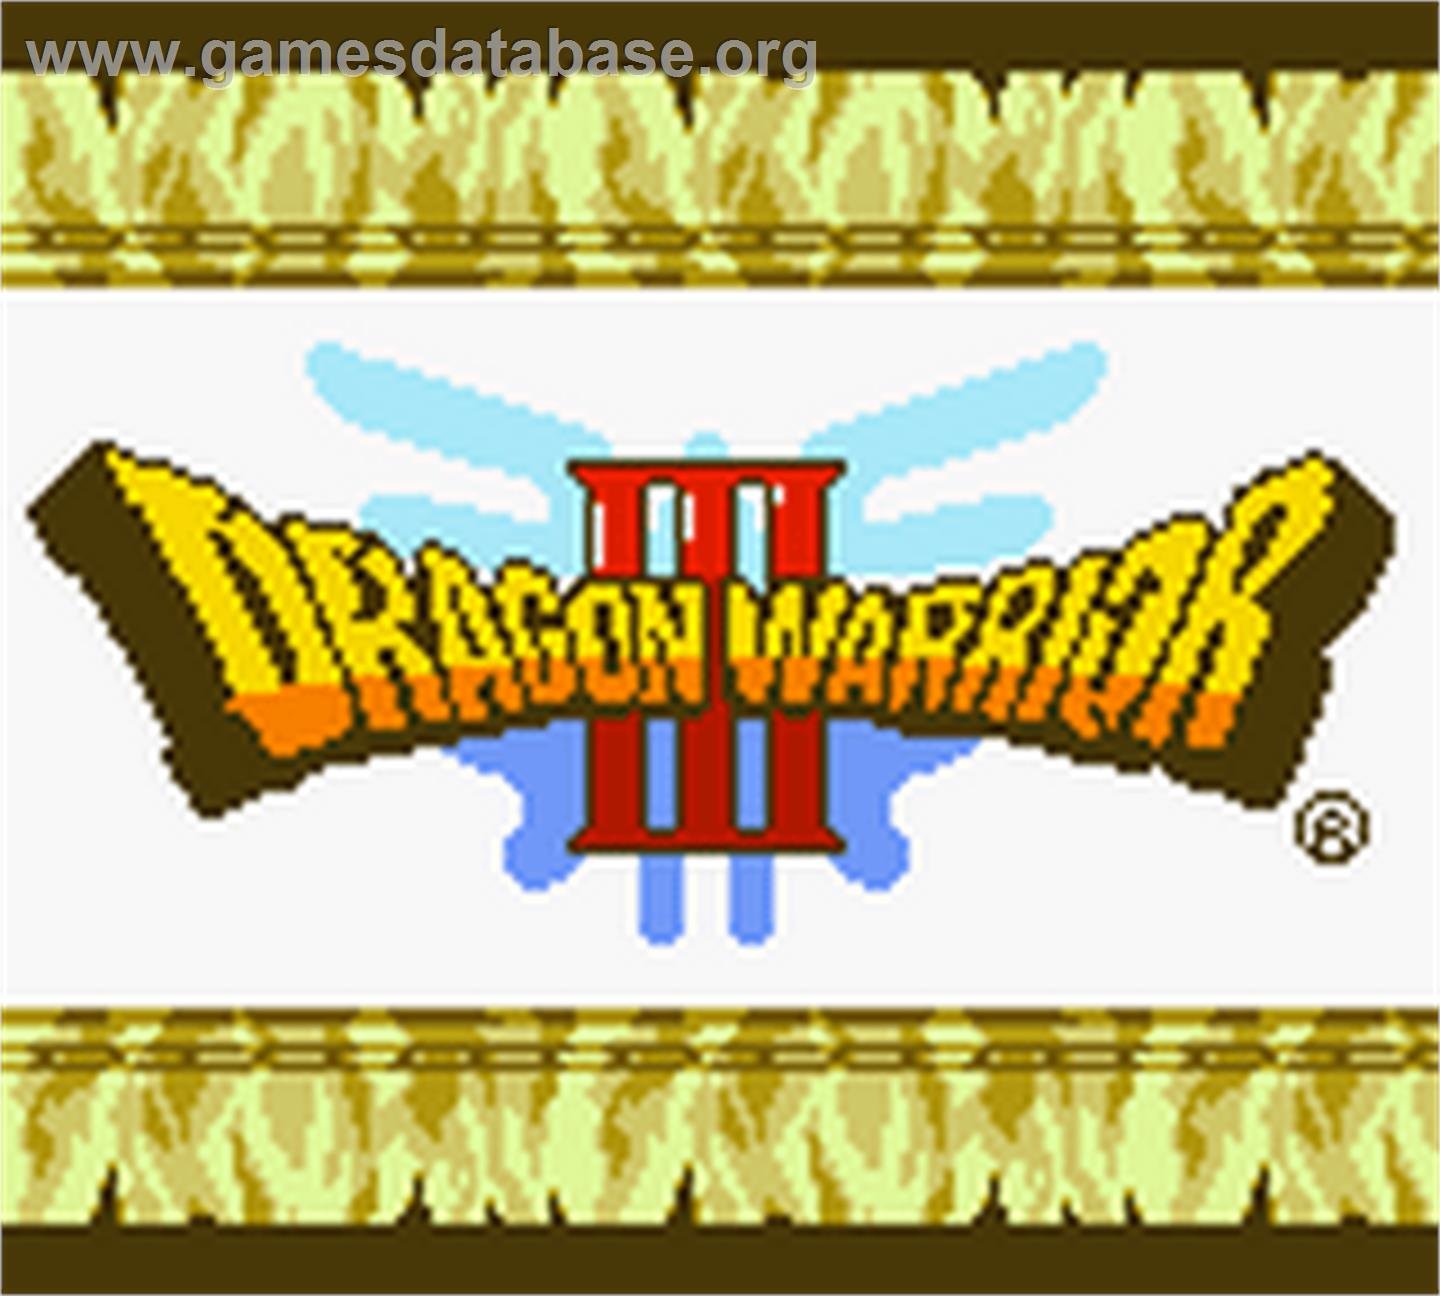 Dragon Warrior 3 - Nintendo Game Boy Color - Artwork - Title Screen